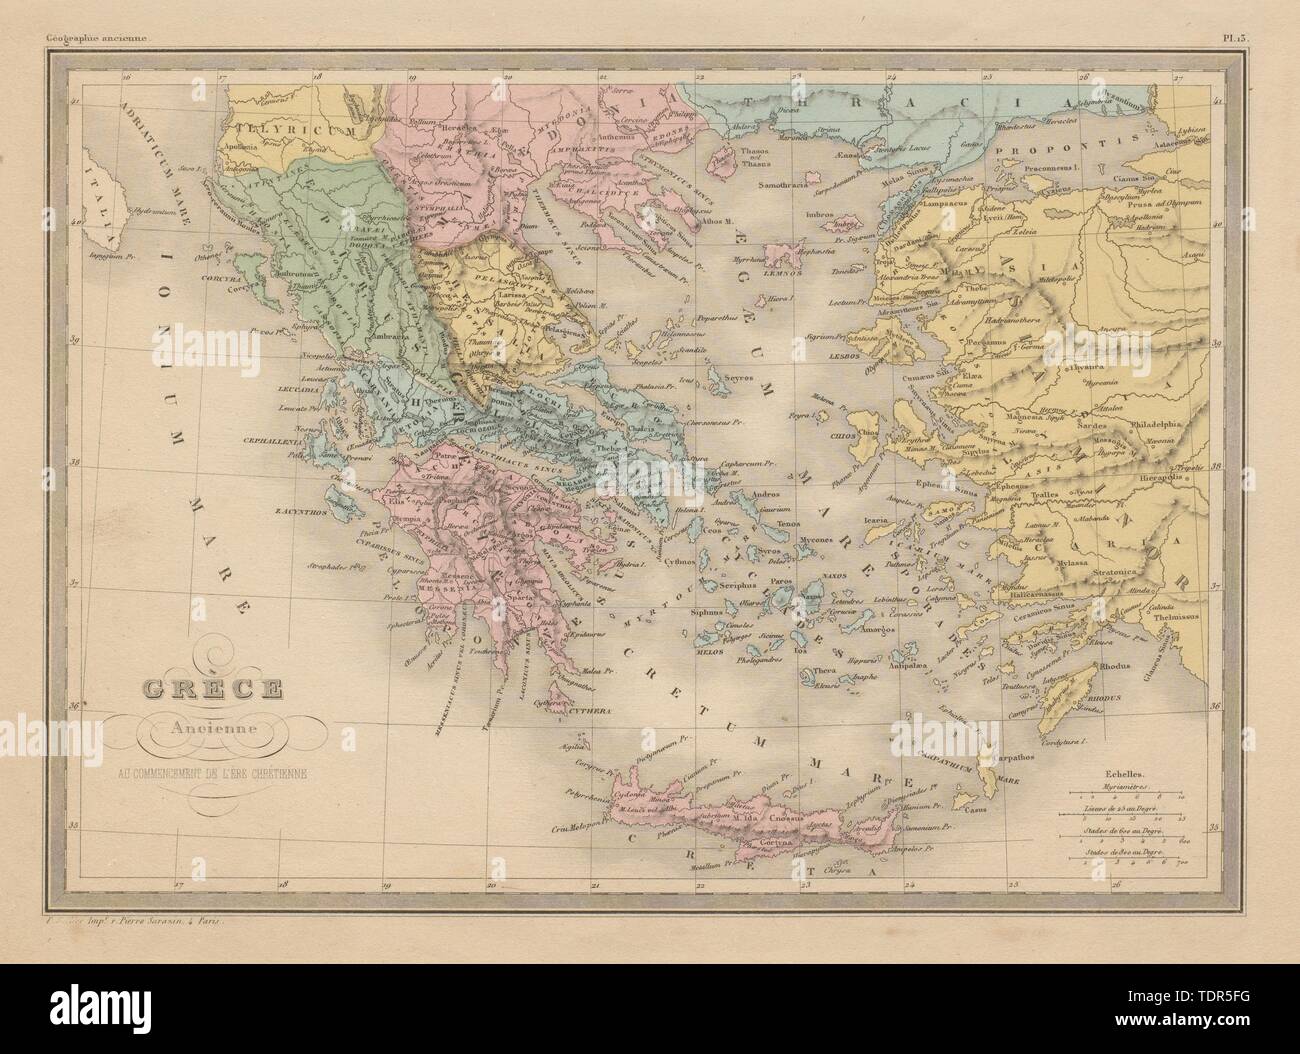 Grèce Ancienne. La Grèce antique au début de l'ère chrétienne. MALTE-BRUN c1871 la carte Banque D'Images